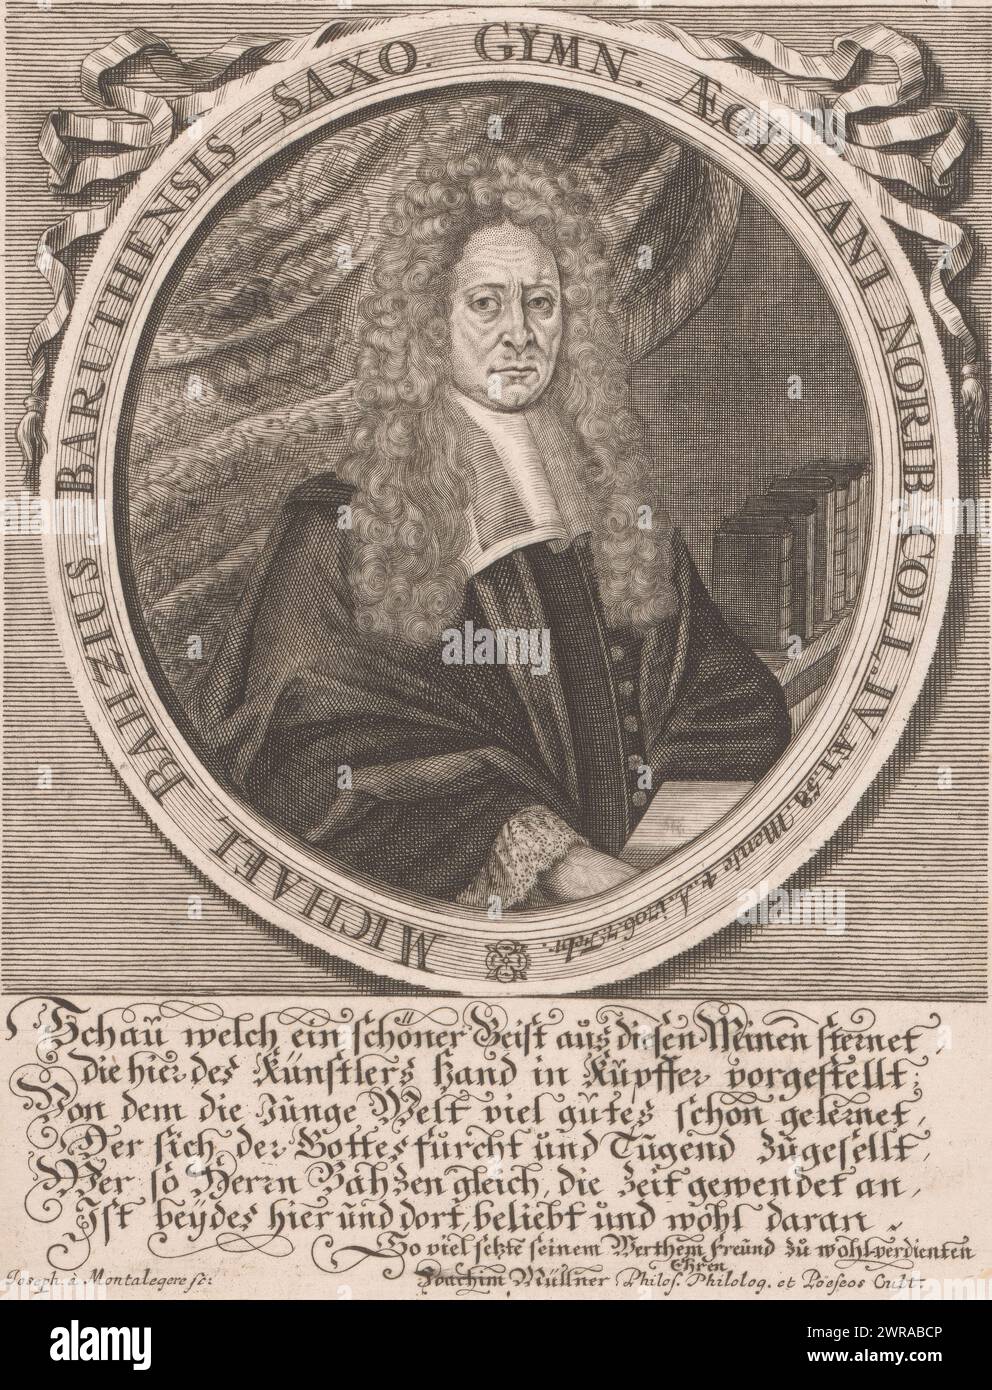 Ritratto di Michael Bahz, tipografo: Joseph de Montalegre, Joachim Müllner, 1700 - 1799, carta, incisione, altezza 187 mm x larghezza 147 mm, stampa Foto Stock